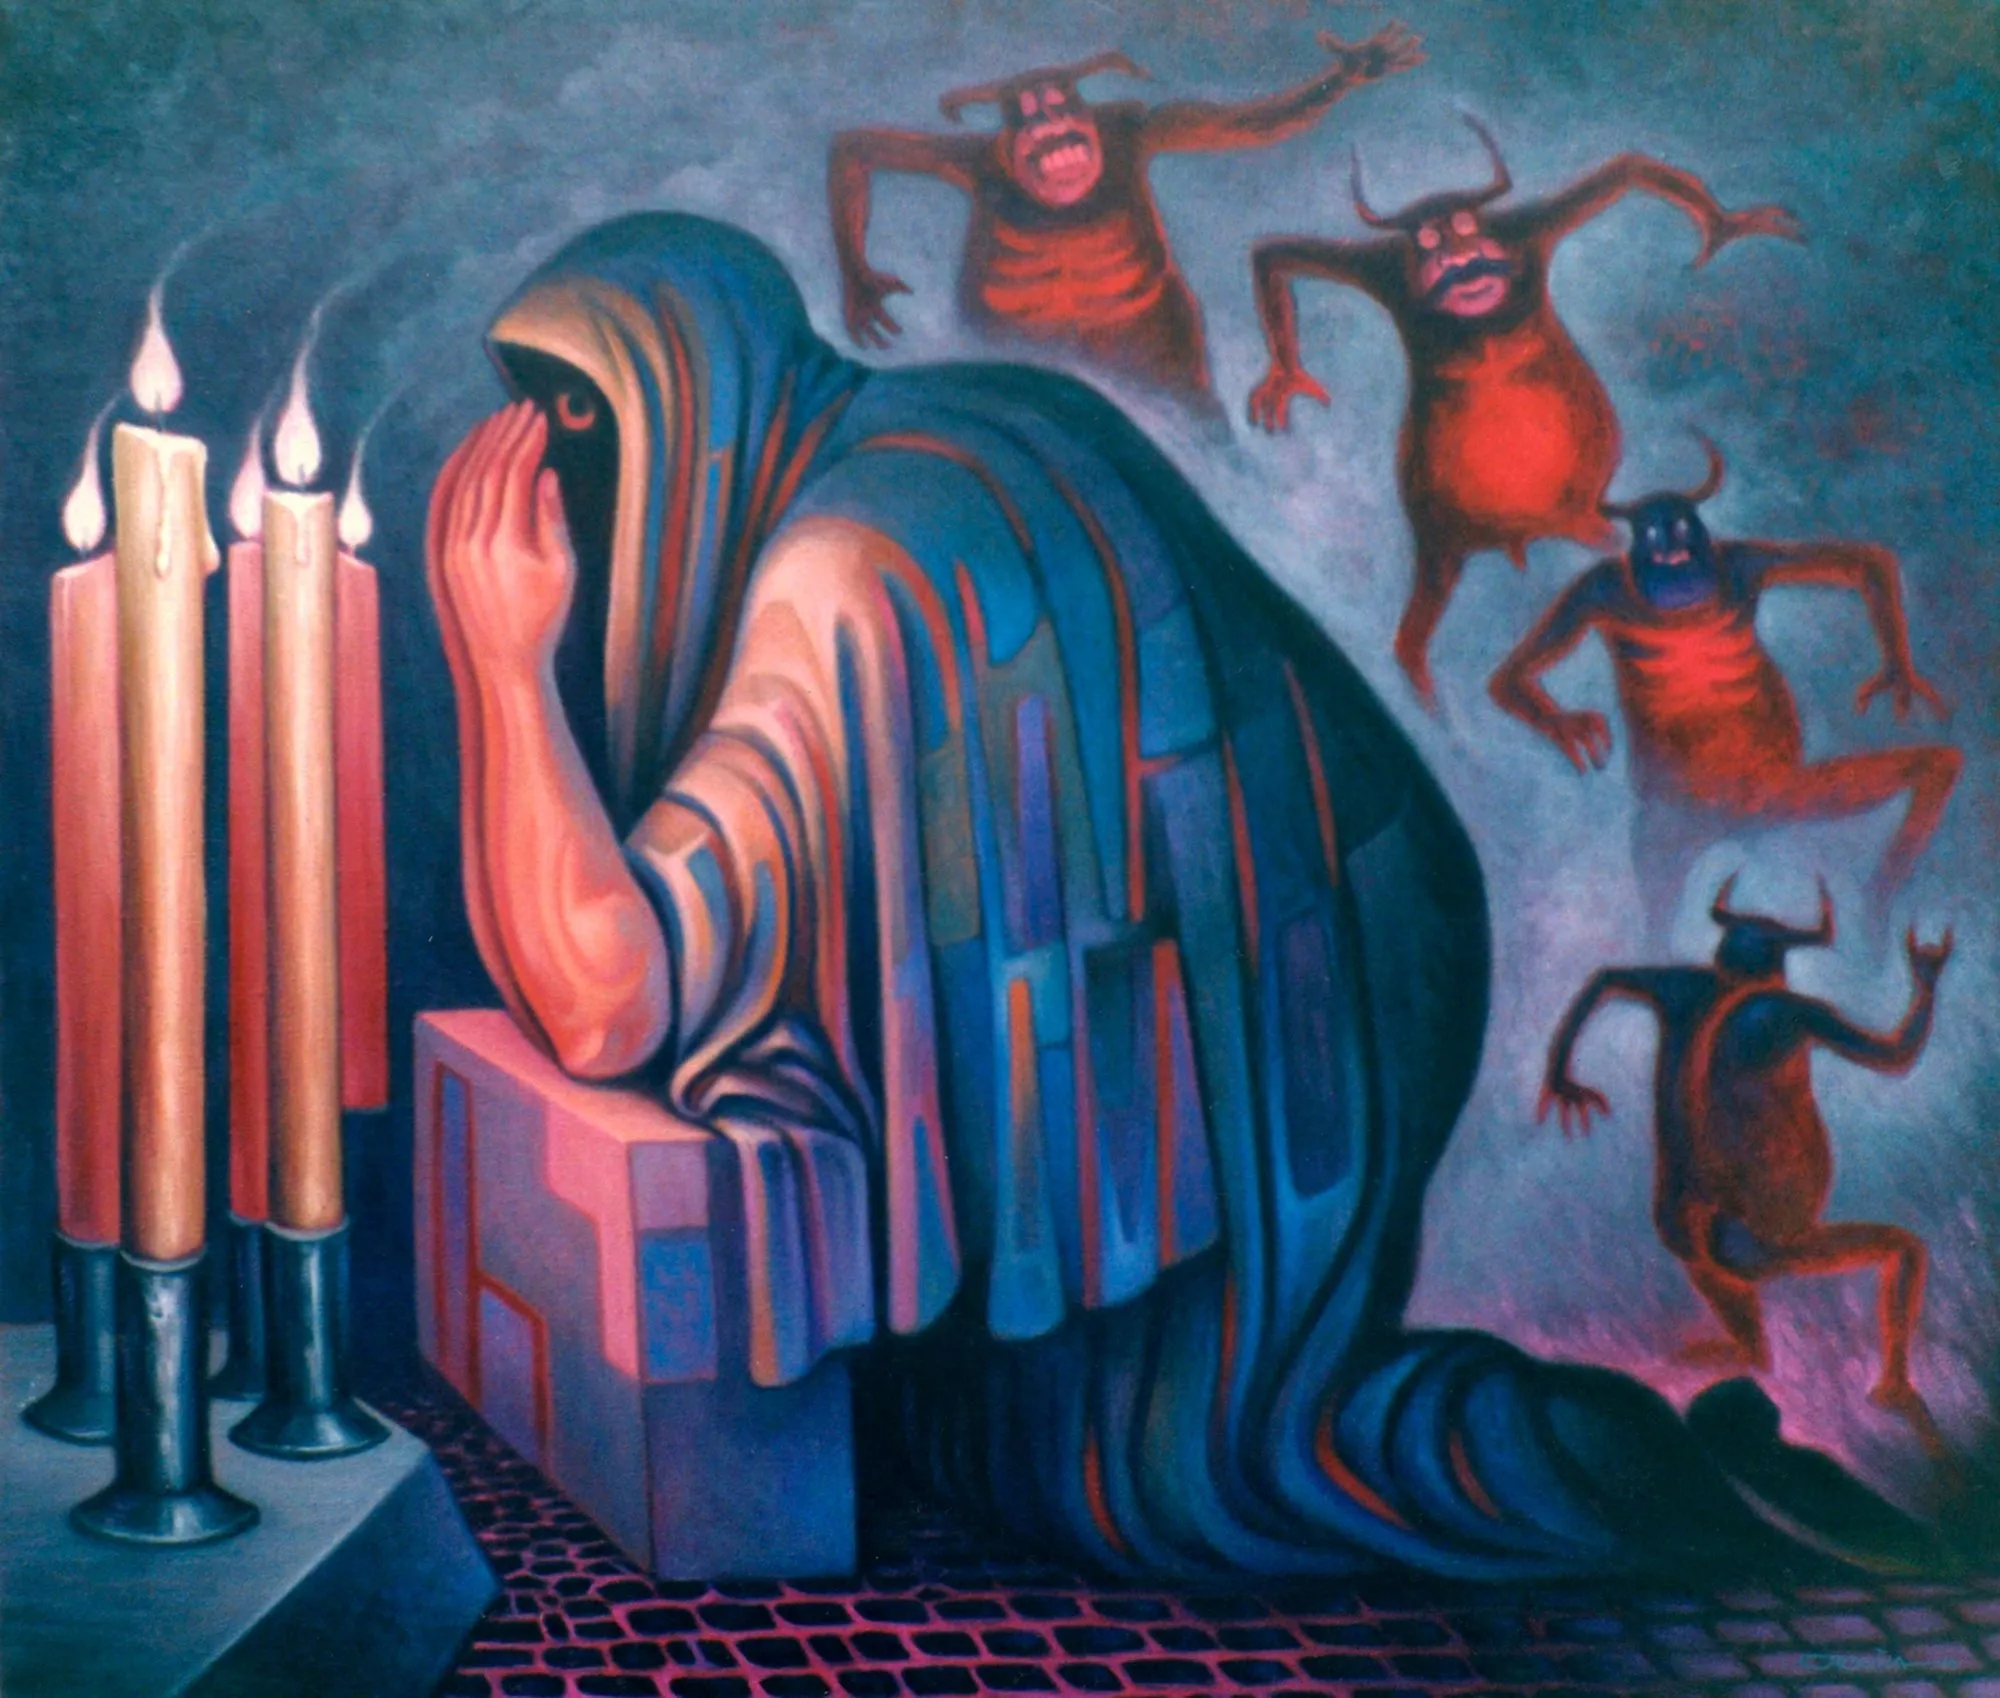 Carlos Orduña, La mocha, 2000.